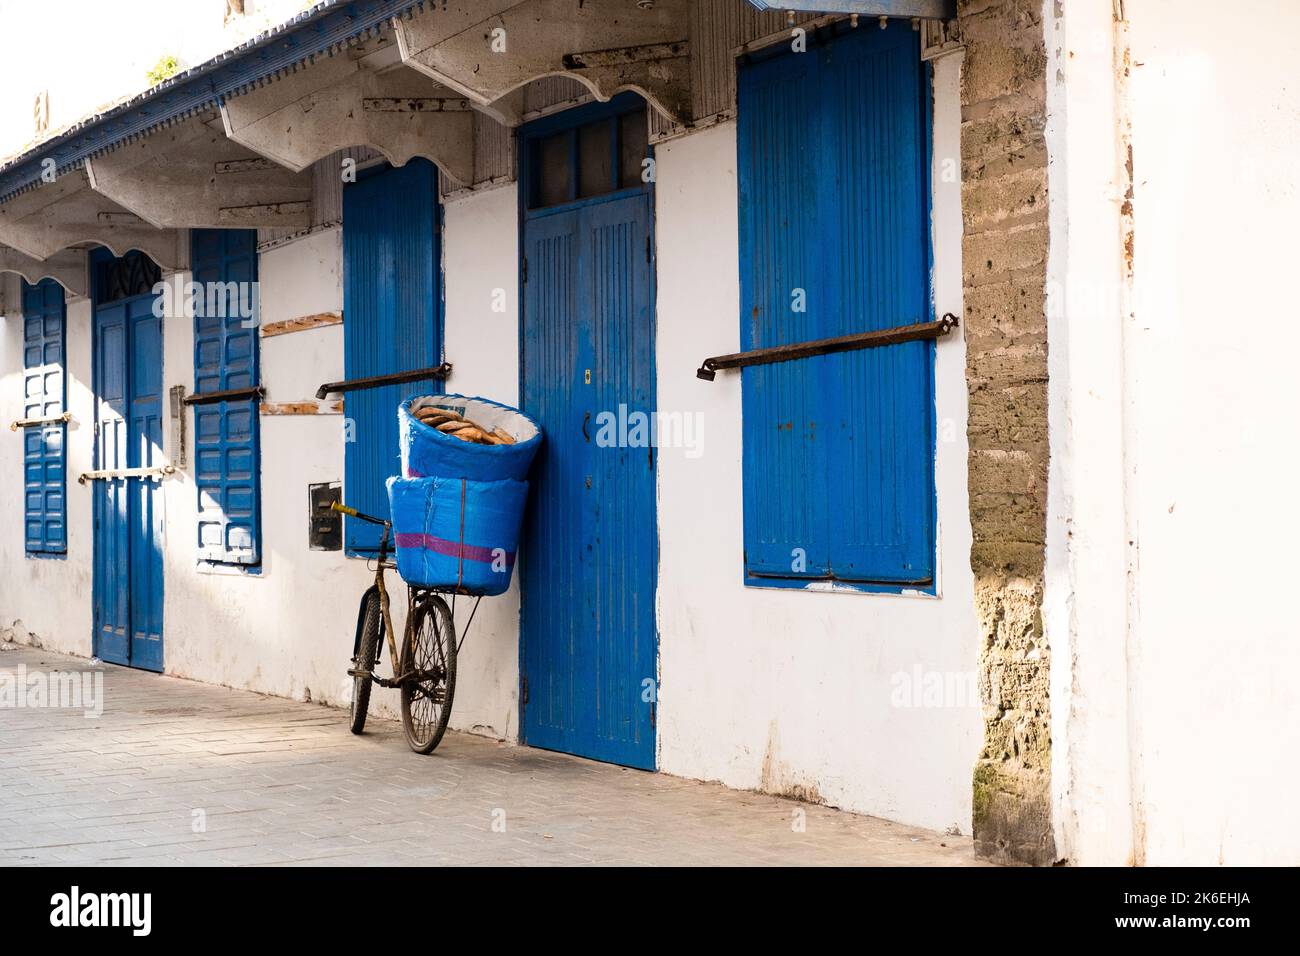 Bicicleta antigua apoyada sobre un edificio blanco y azul índigo que lleva cestas llenas de Kobz, el pan redondo marroquí que se come típicamente con tagine Foto de stock